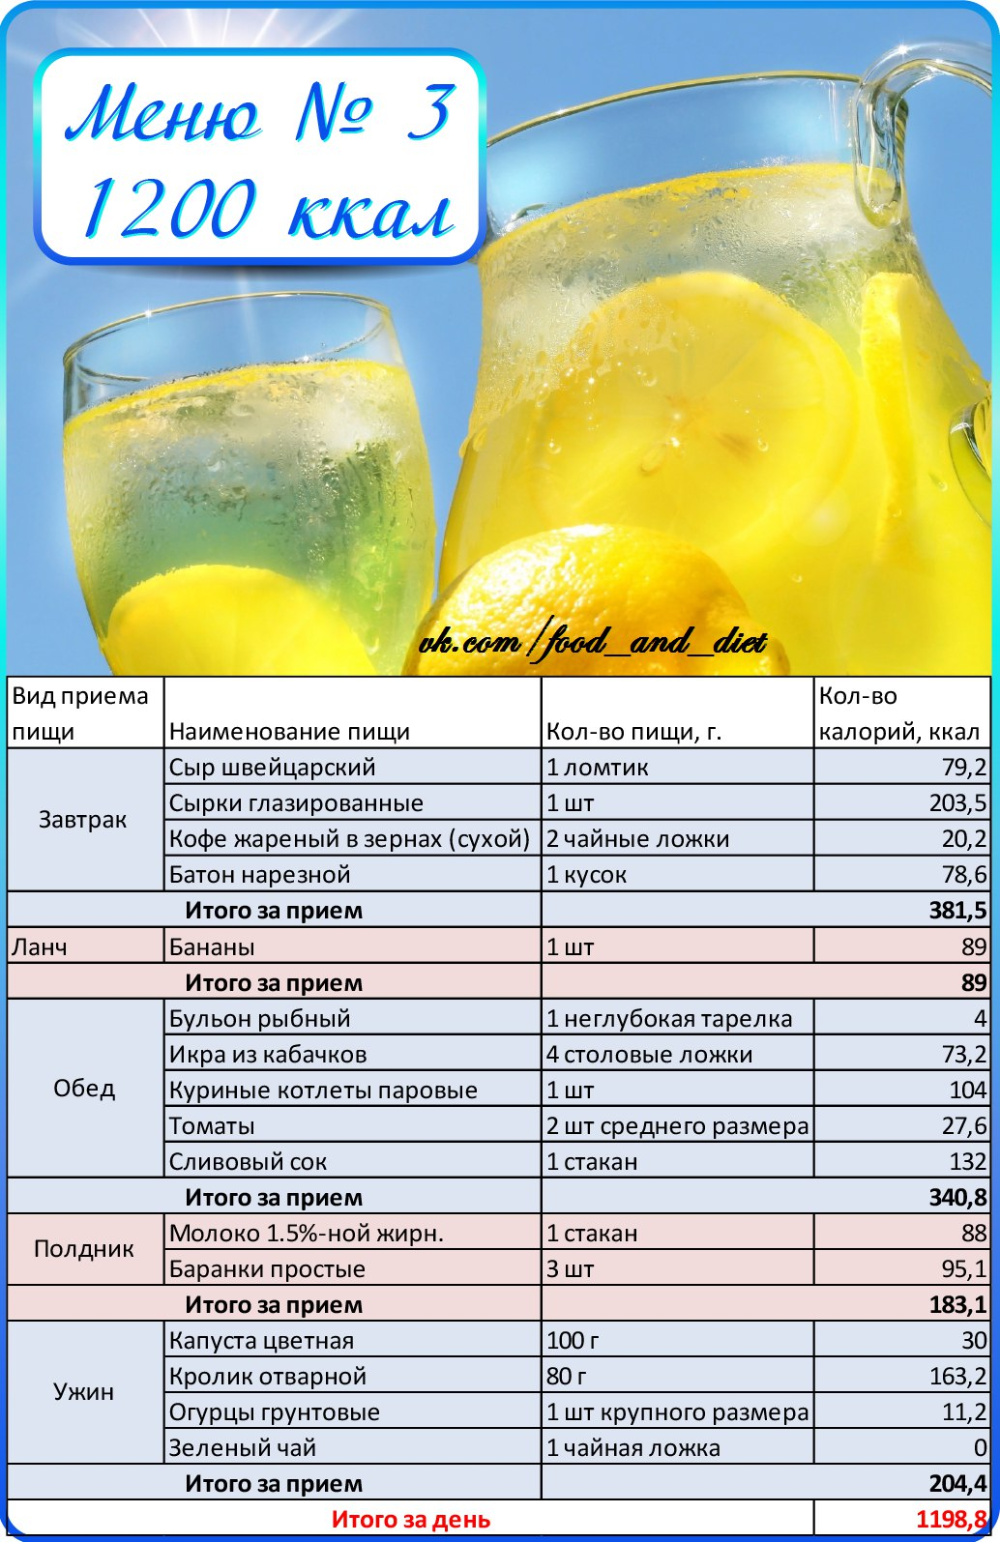 Диета по калориям для похудения - таблица и меню на неделю